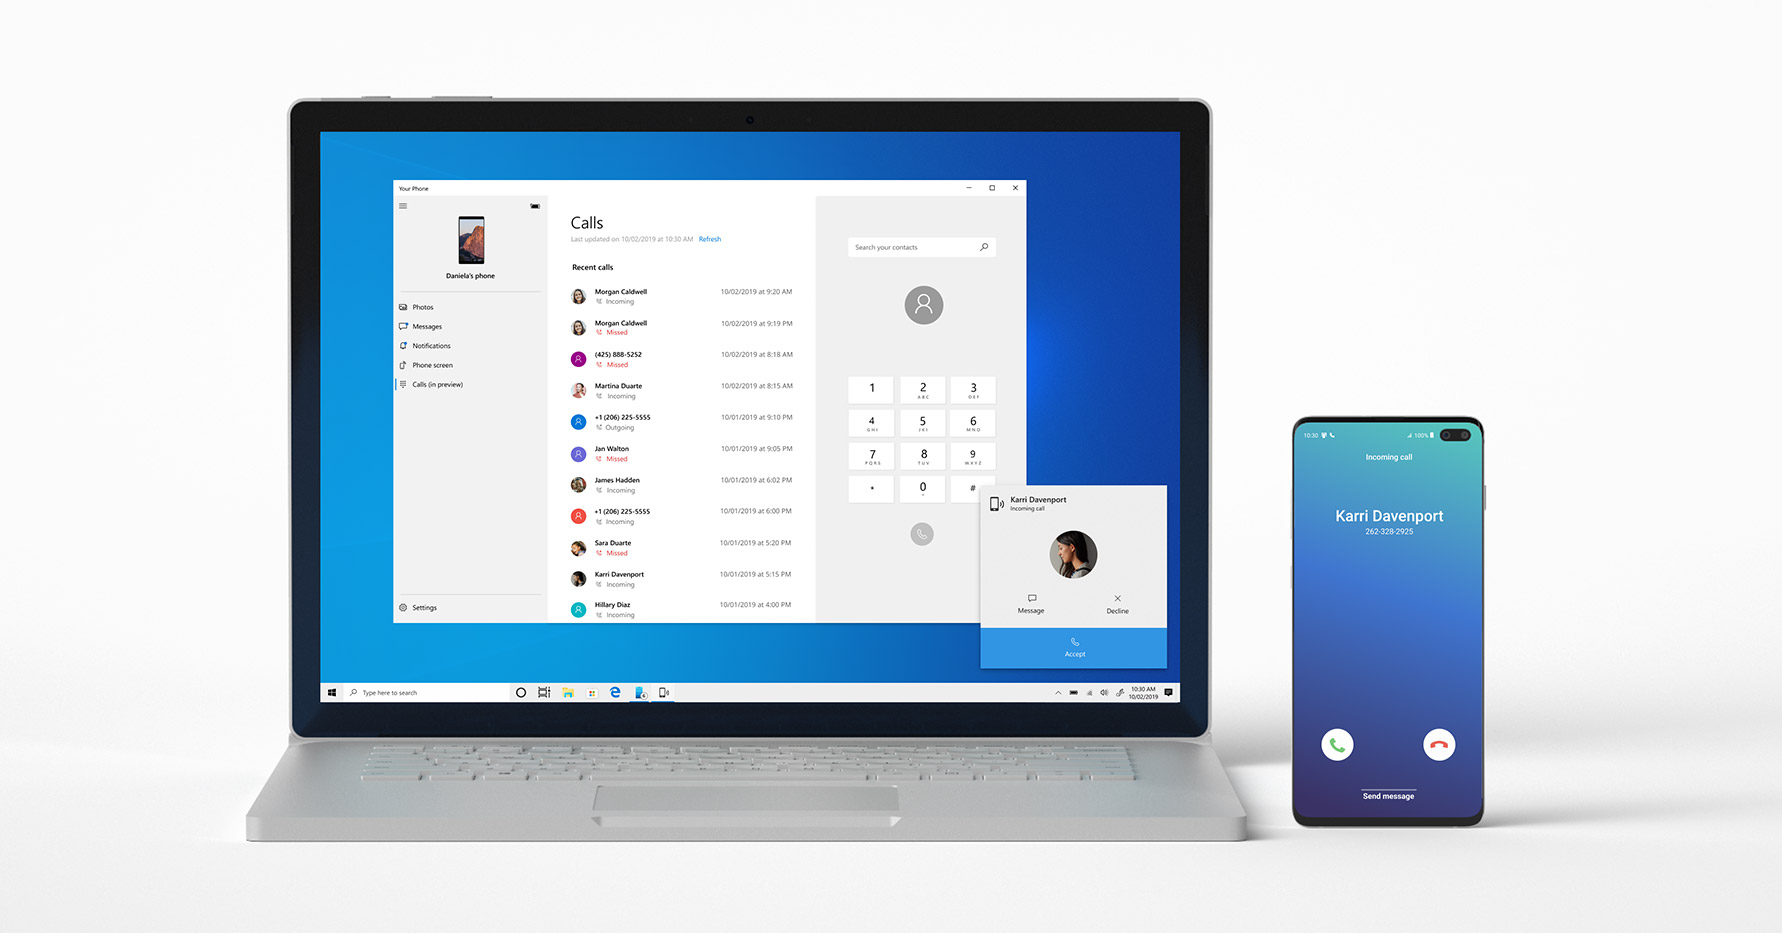 Windows 10 sắp có chức năng gọi điện trực tiếp từ máy tính